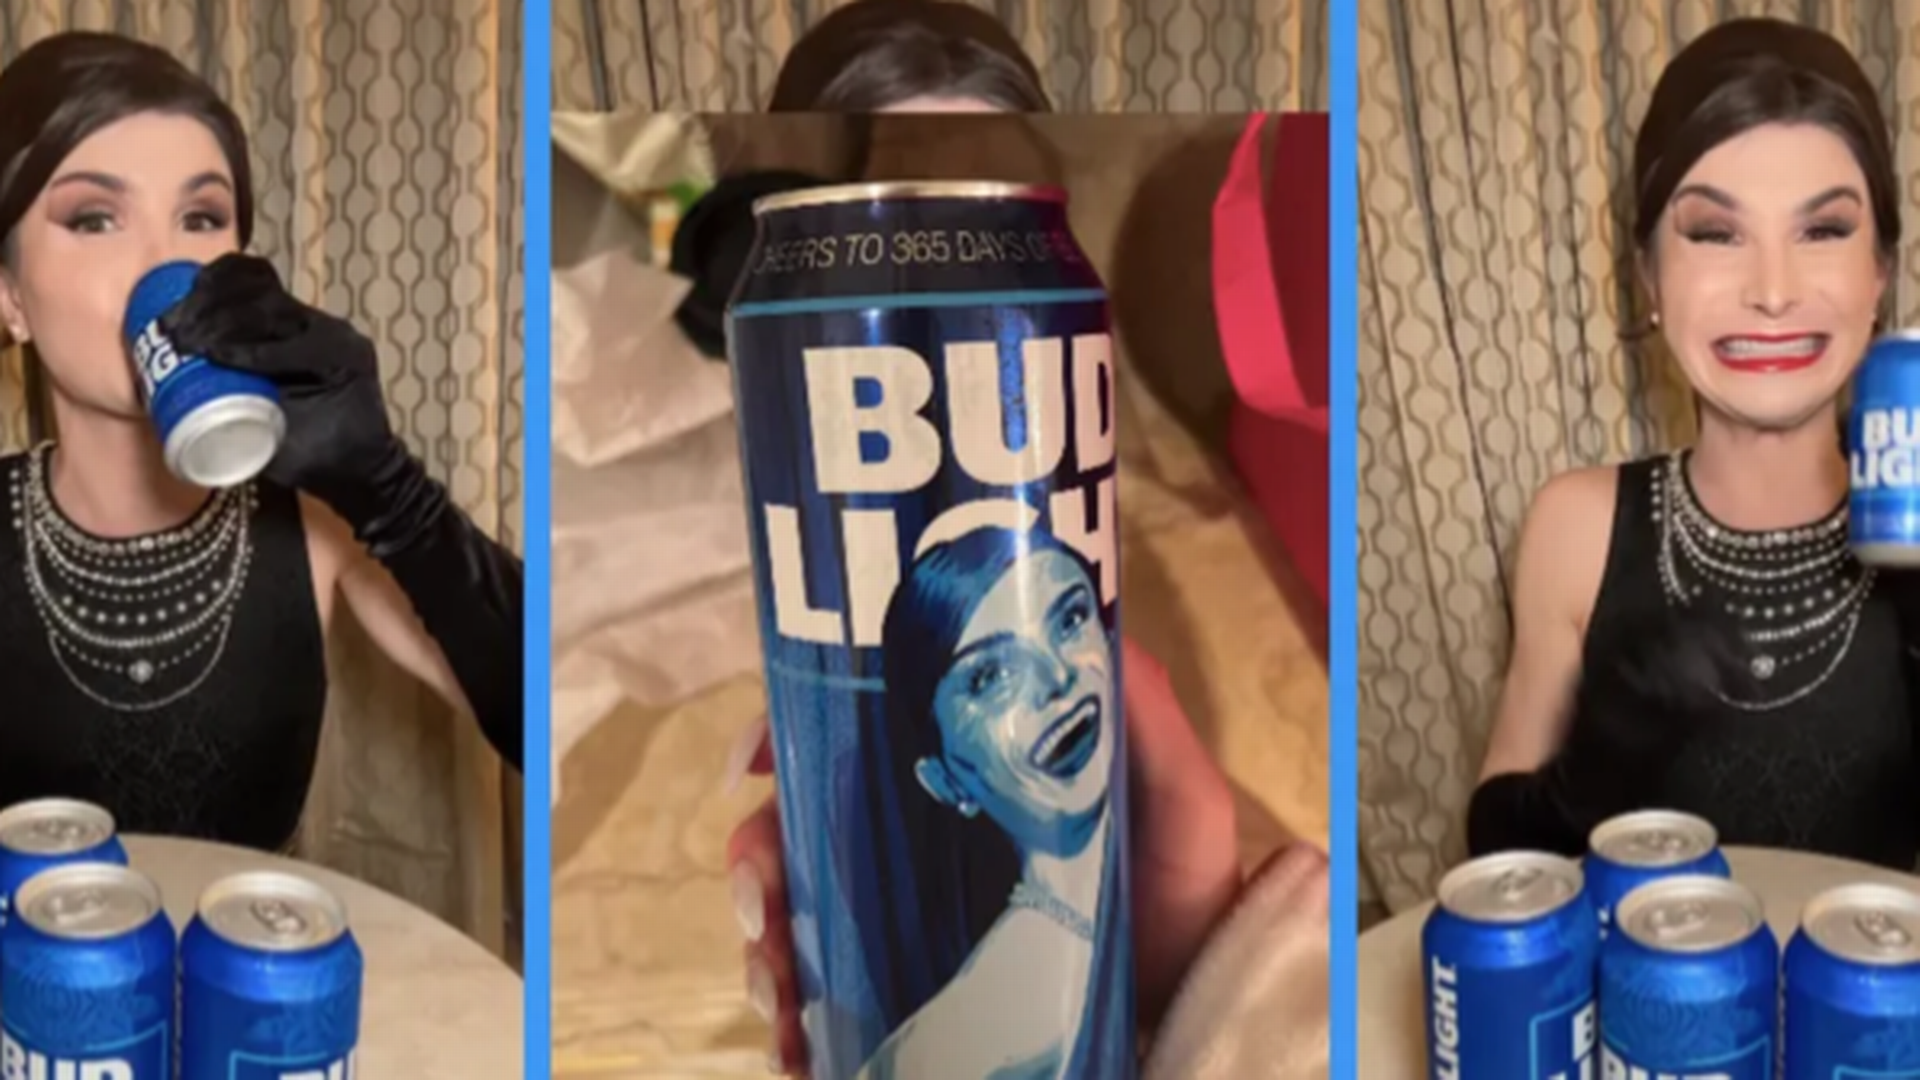 Til stor vrede i det konservative USA har ølfirmaet Budweiser lavet en stor kampagne med den transkønnede influencer Dylan Mulvaney. Har shitstormen ført til en effektiv boykot og et dårligt salg? Nej, for Woke Branding er en langt bedre forretning, end rygtet siger. | Foto: Dylan Mulvaney.